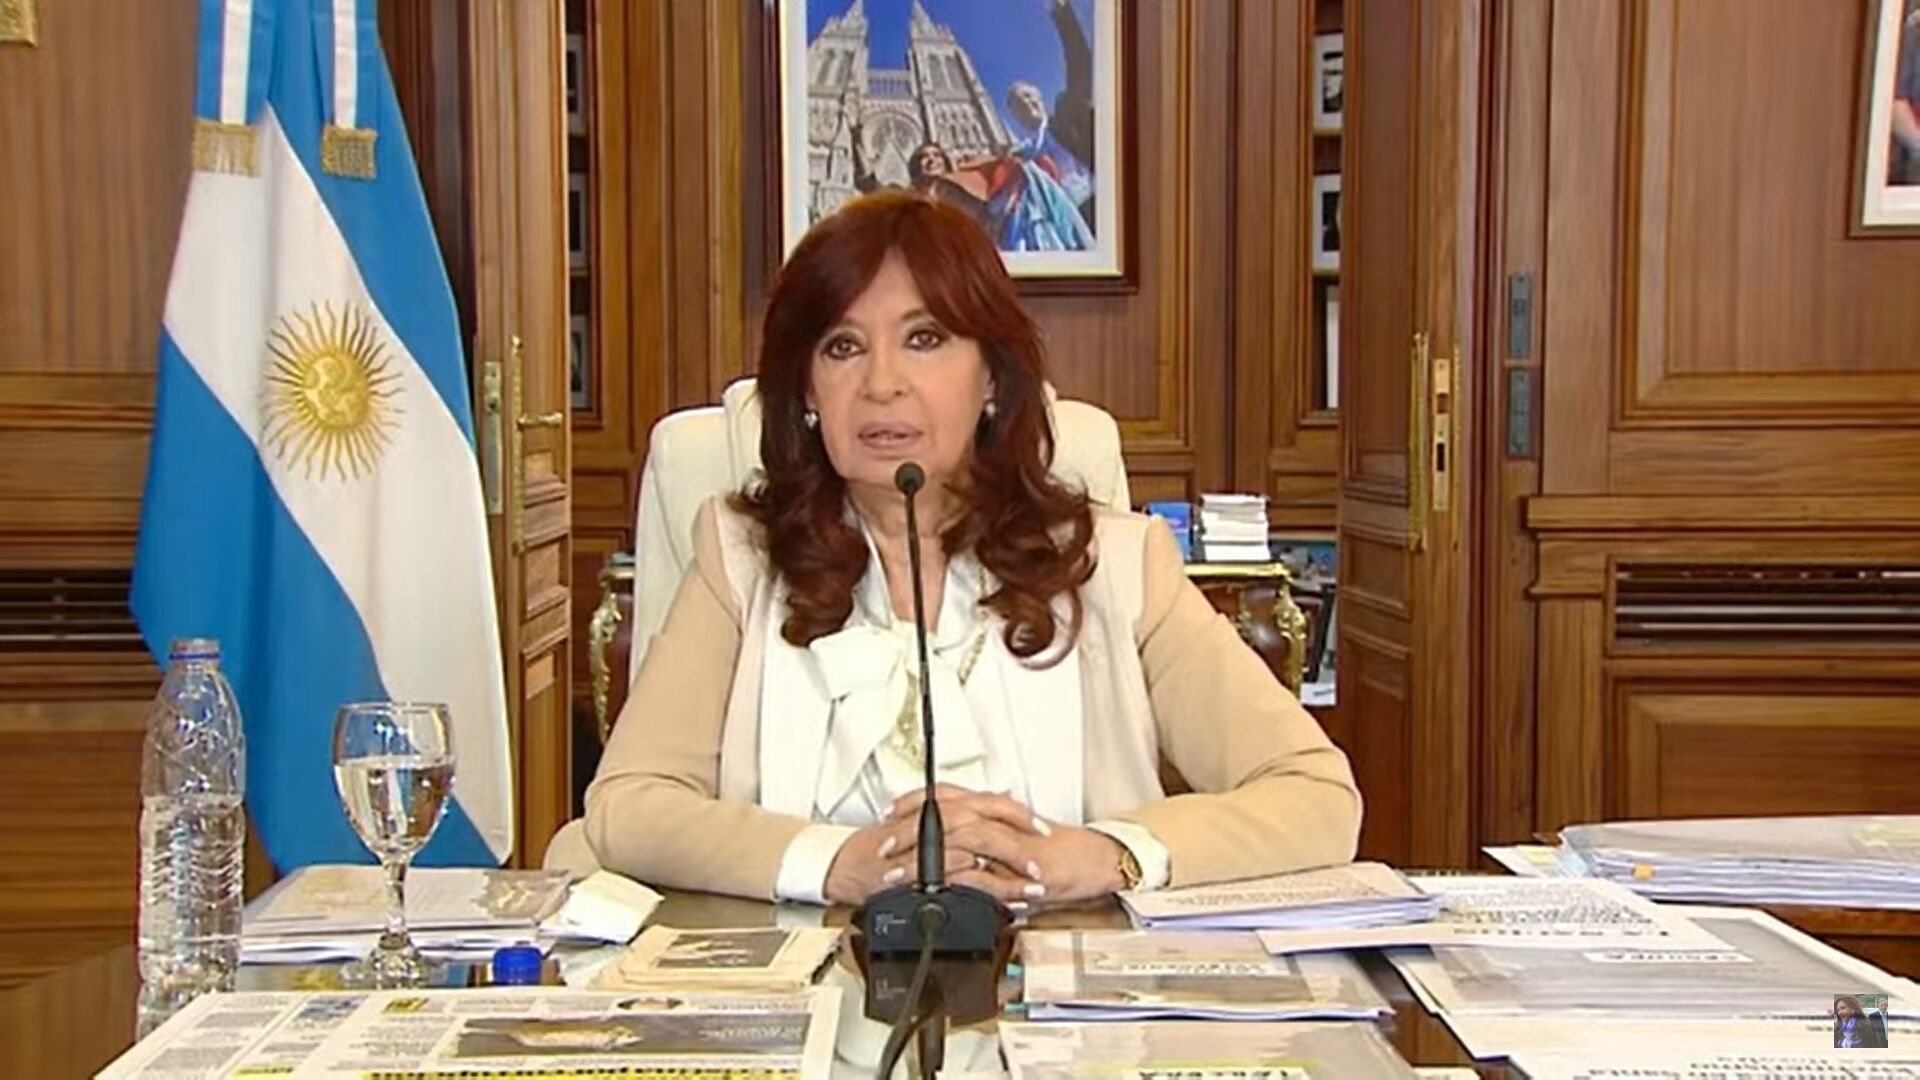 Cristina Fernández de Kirchner desafía a la justicia y se escuda en el 'lawfare' - Libertad Digital